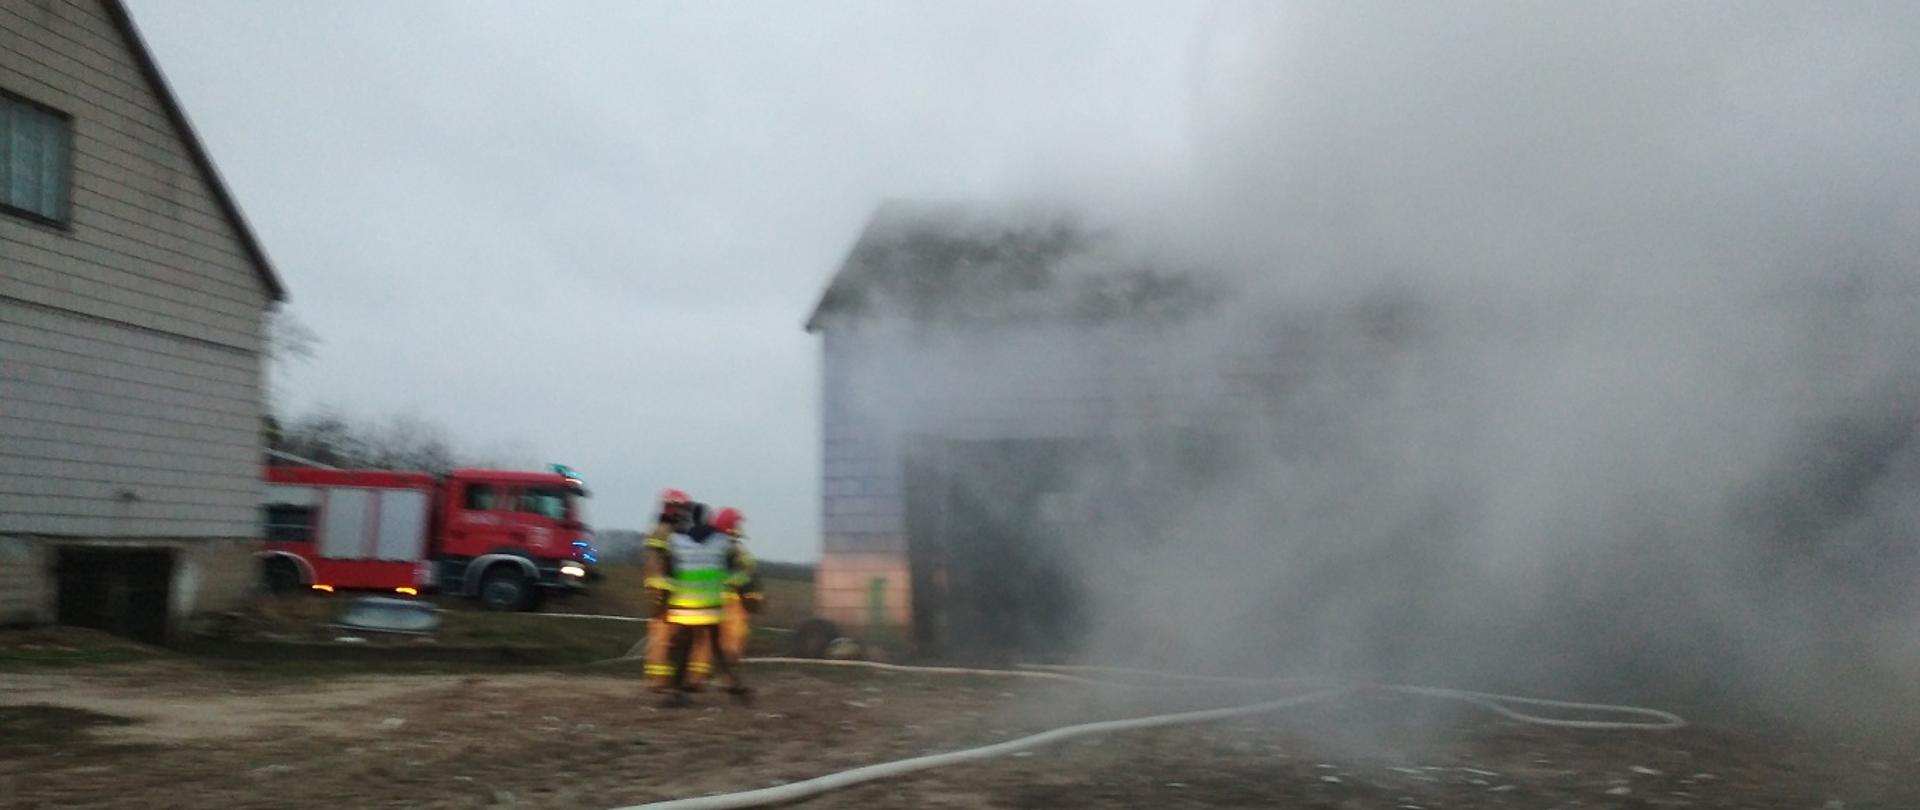 Na zdjęciu widać trzech strażaków, rozwinięty wąż strażacki, budynek murowanej stodoły z której wydobywa się szary dym, w lewej części zdjęcia część budynek mieszkalnego o białej ścianie, w tle samochód strażacki